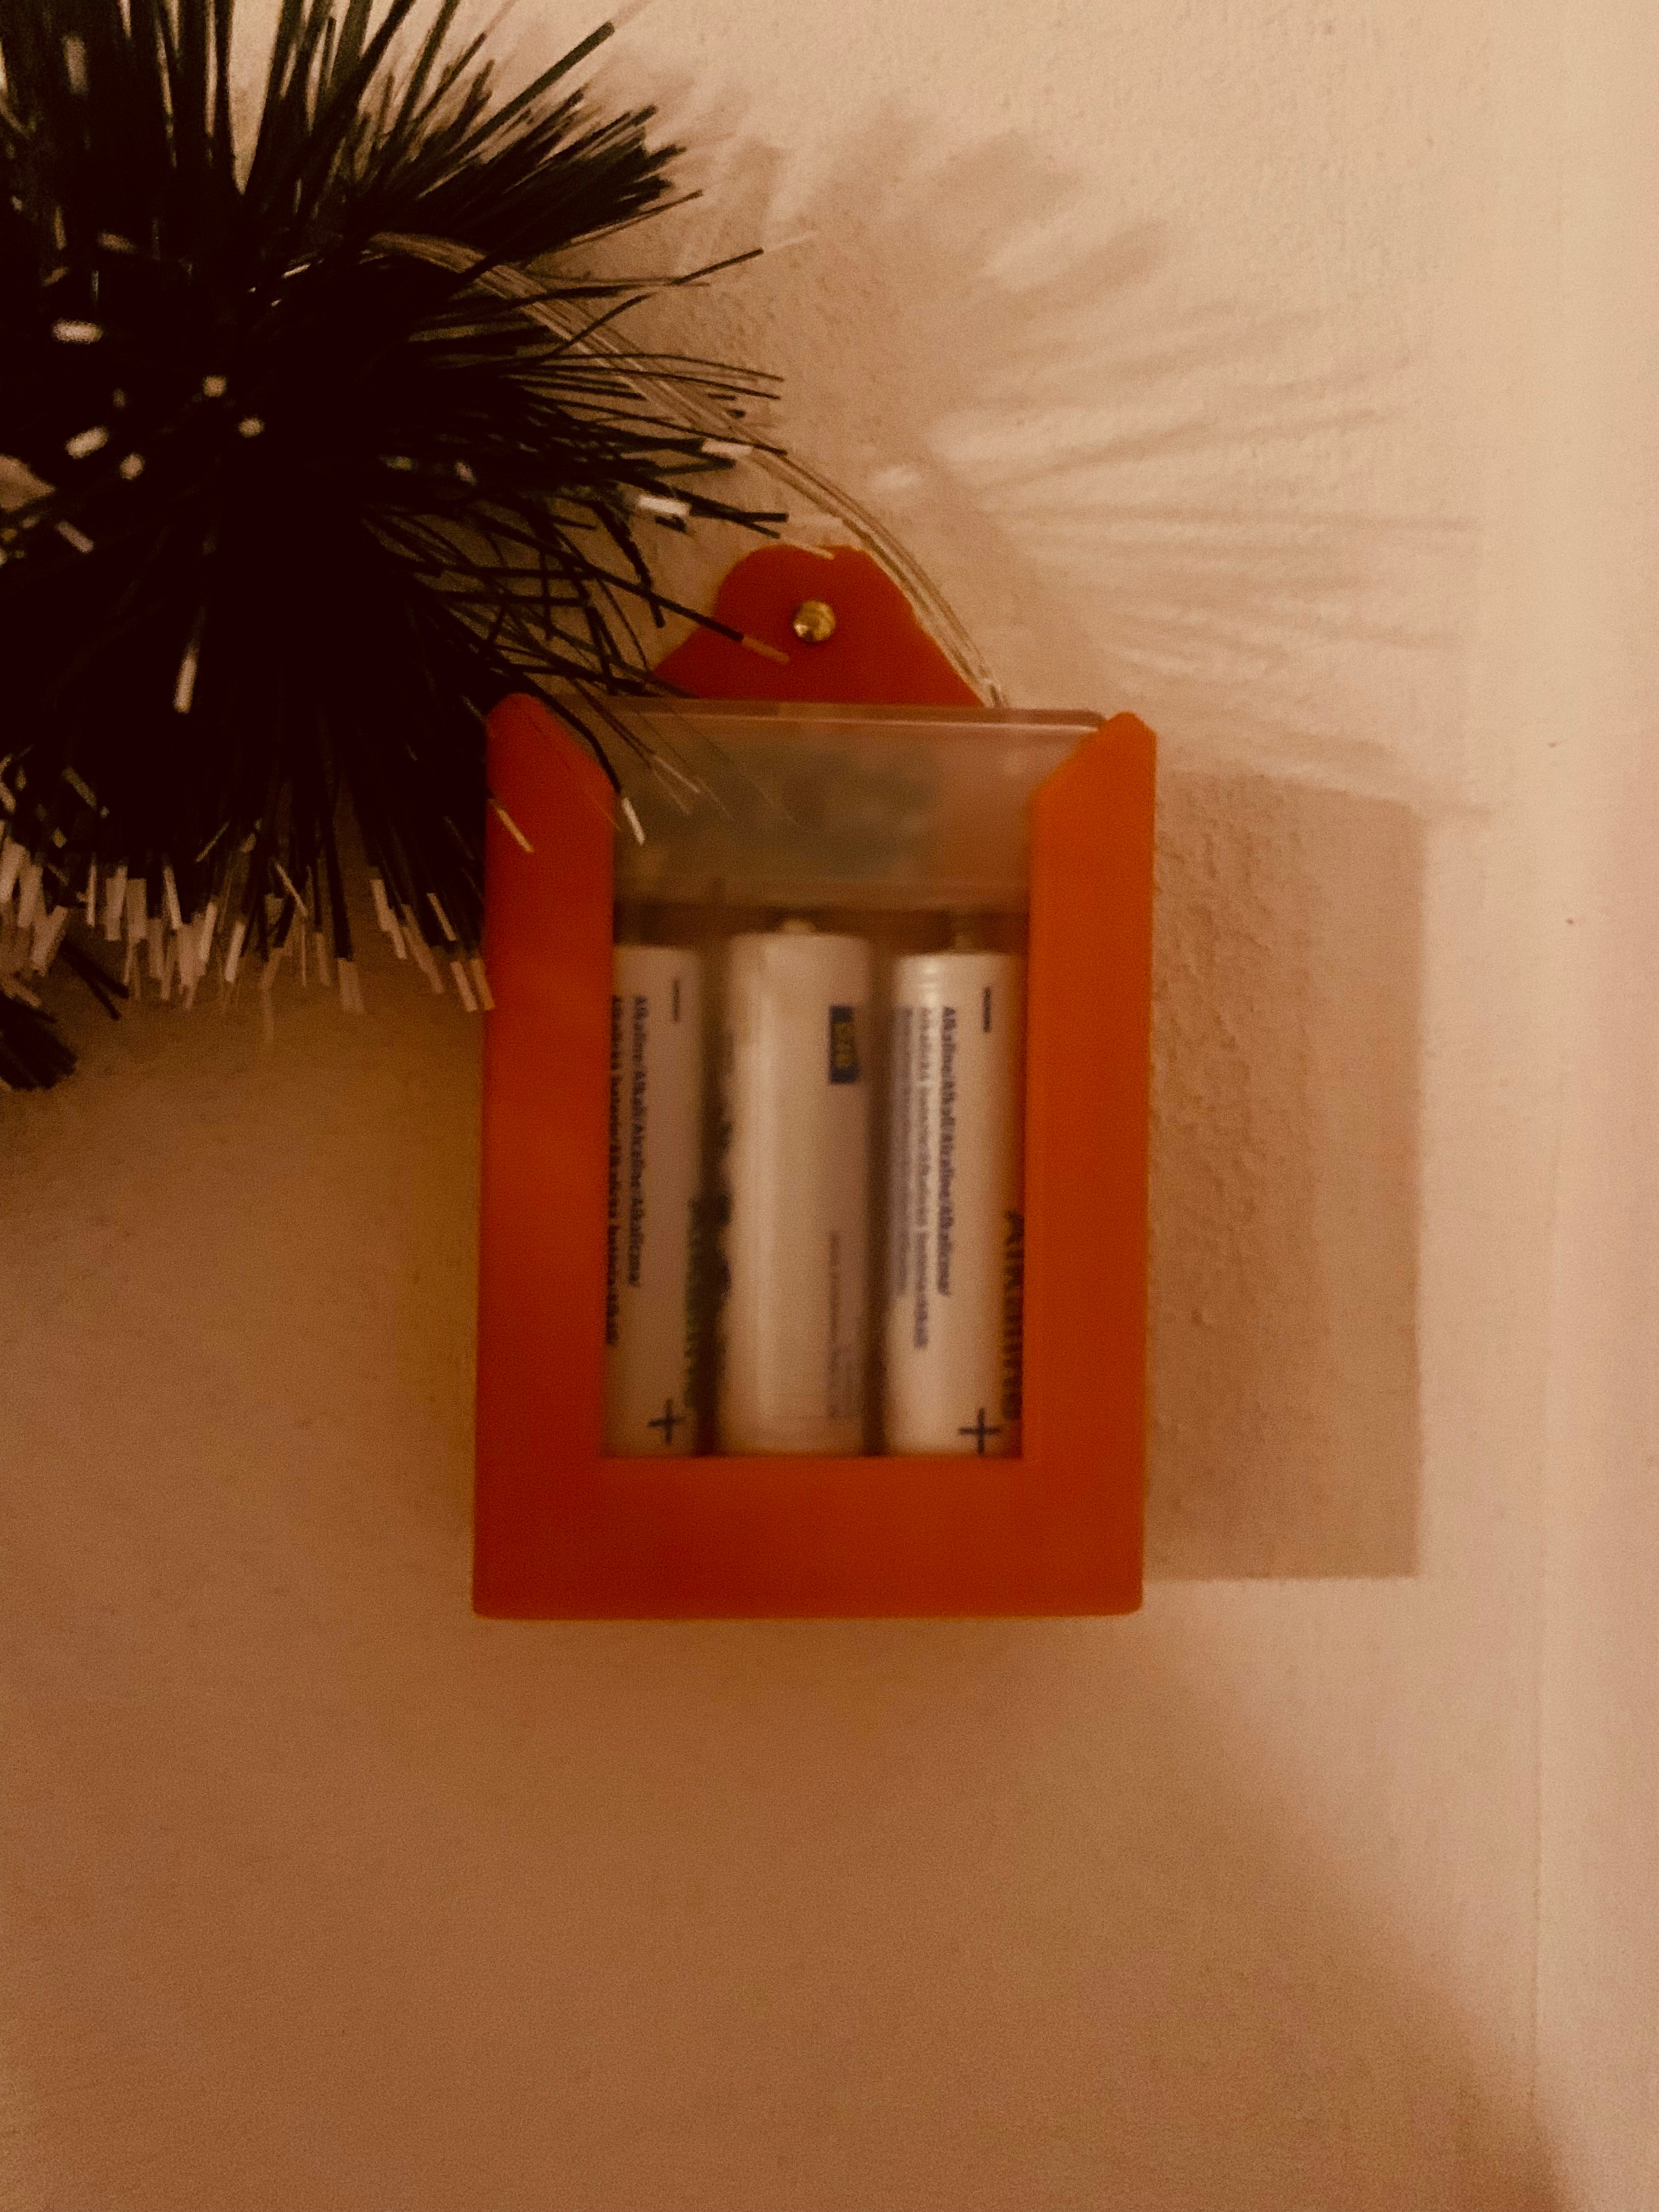 Battery holder for Christmas lights.